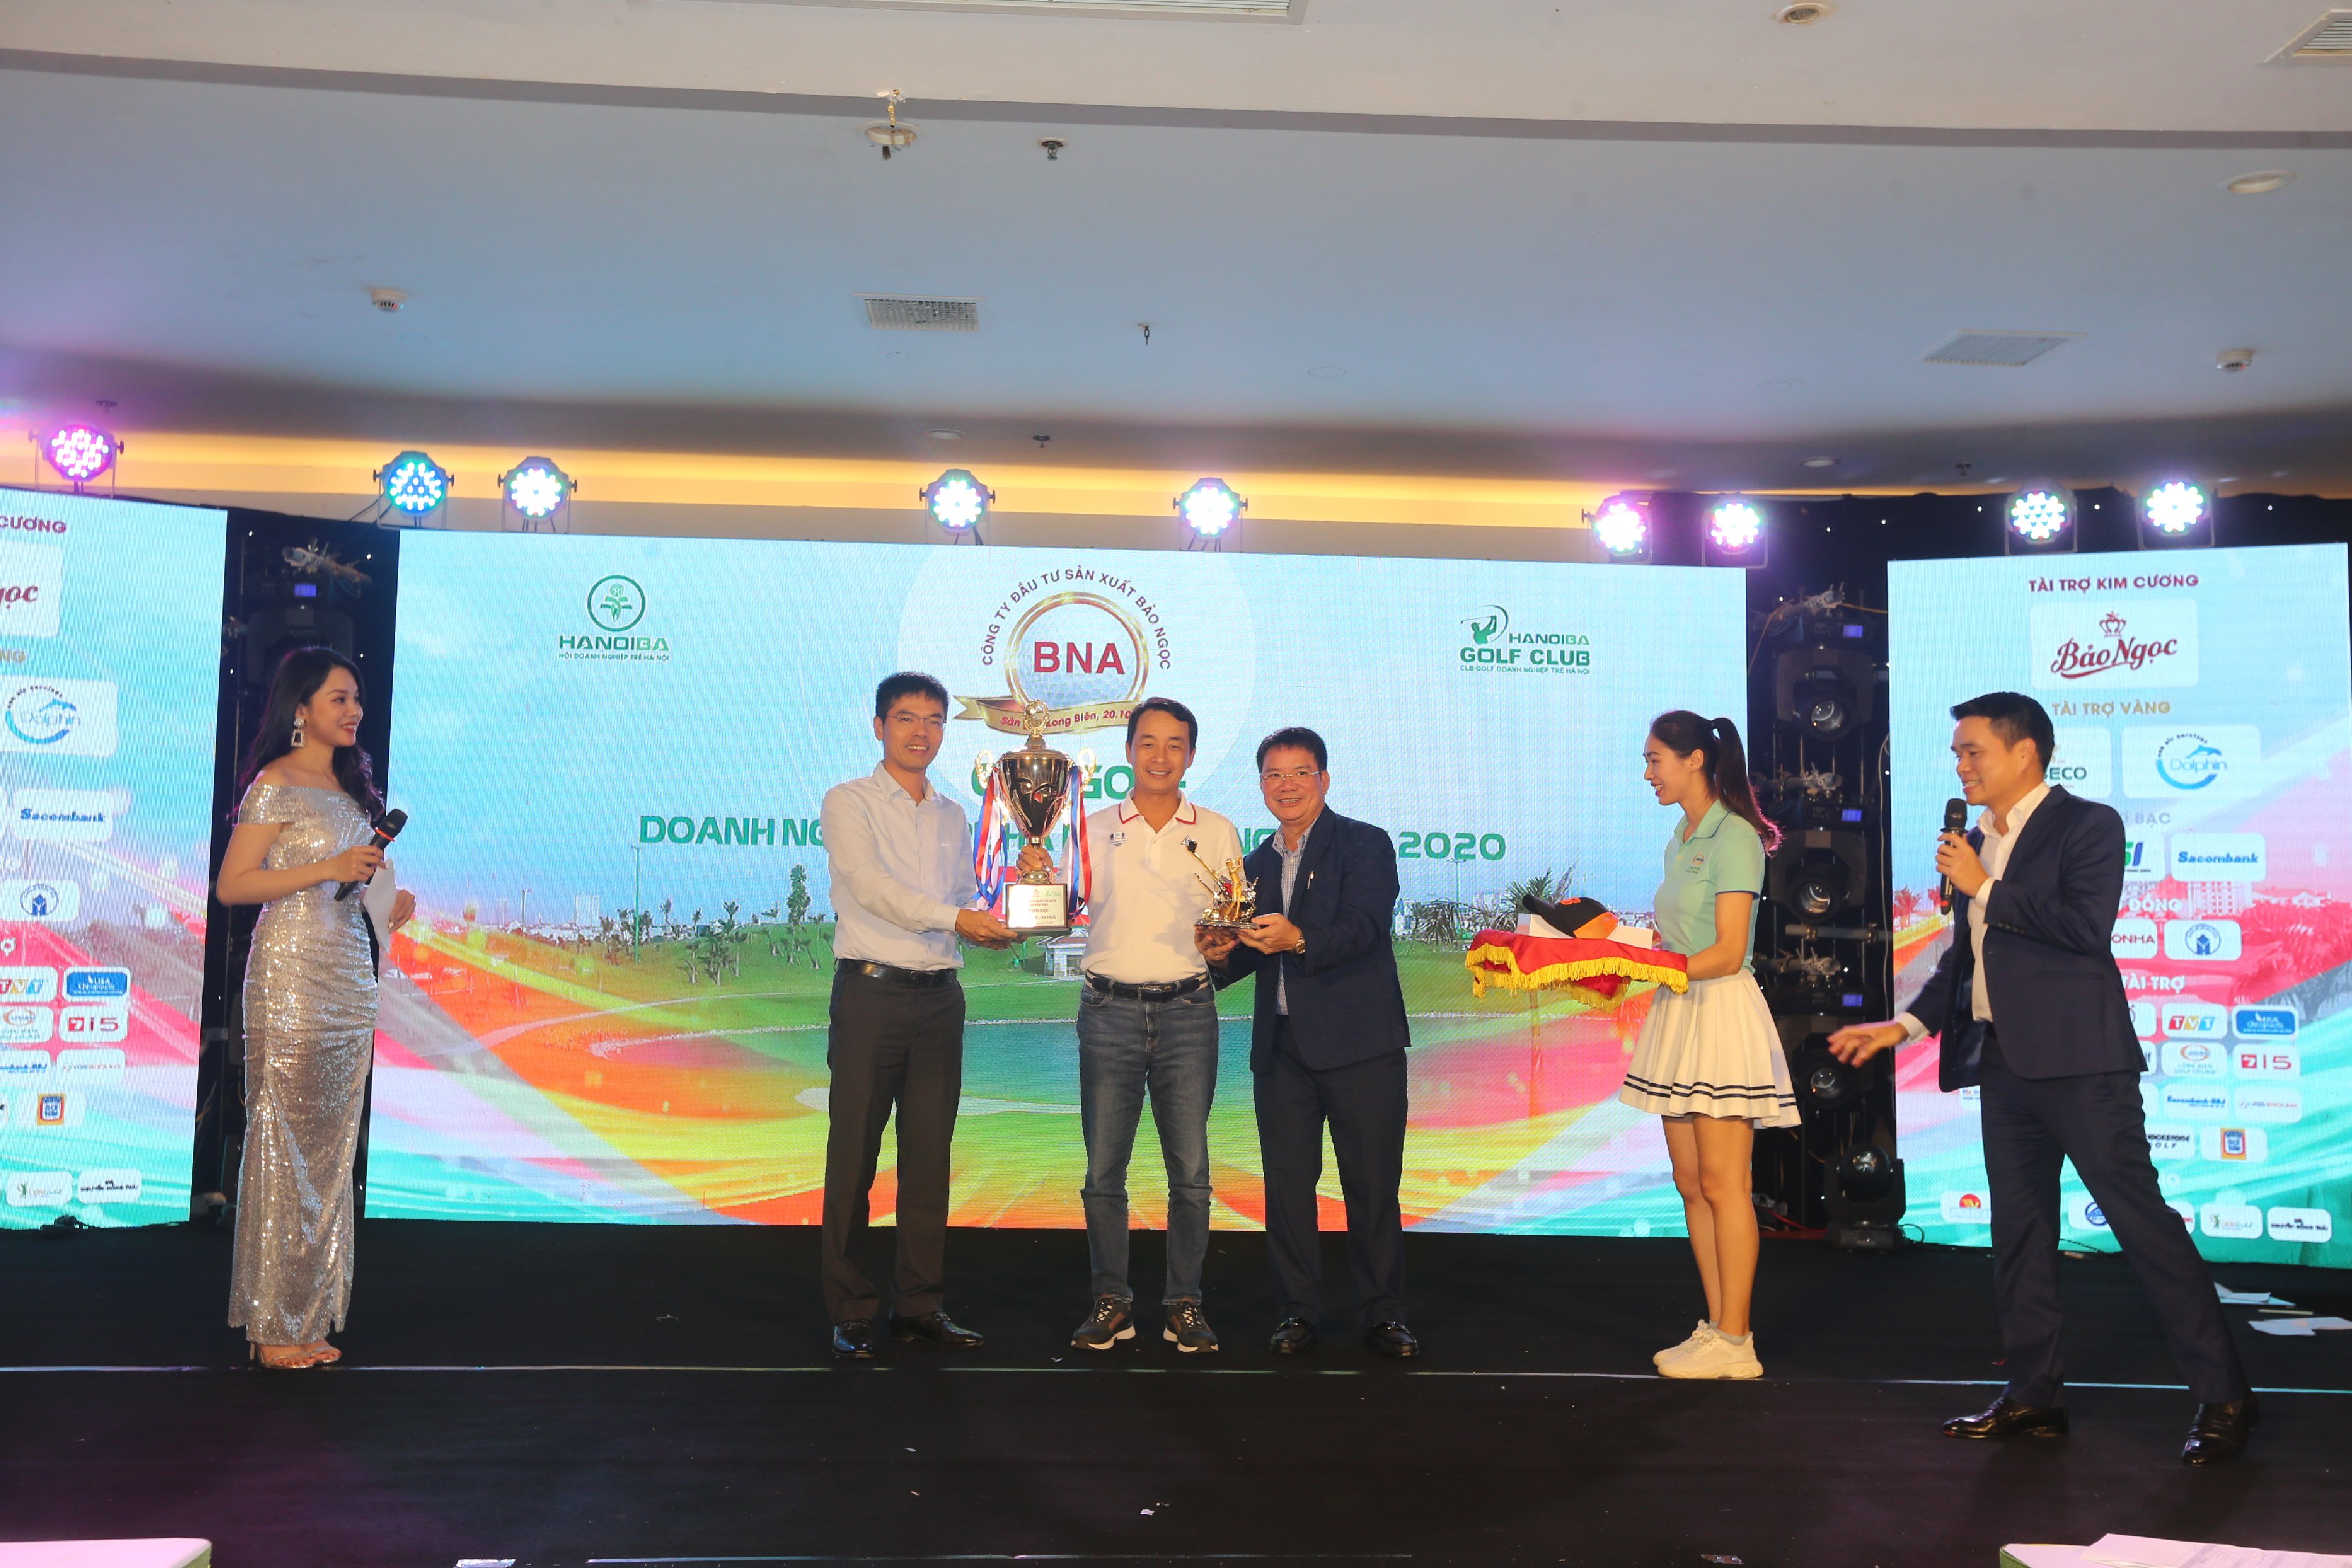 Golfer Lê Hùng Nam vô địch giải Doanh nghiệp trẻ Hà Nội vì cộng đồng 2020 – Cúp Bảo Ngọc